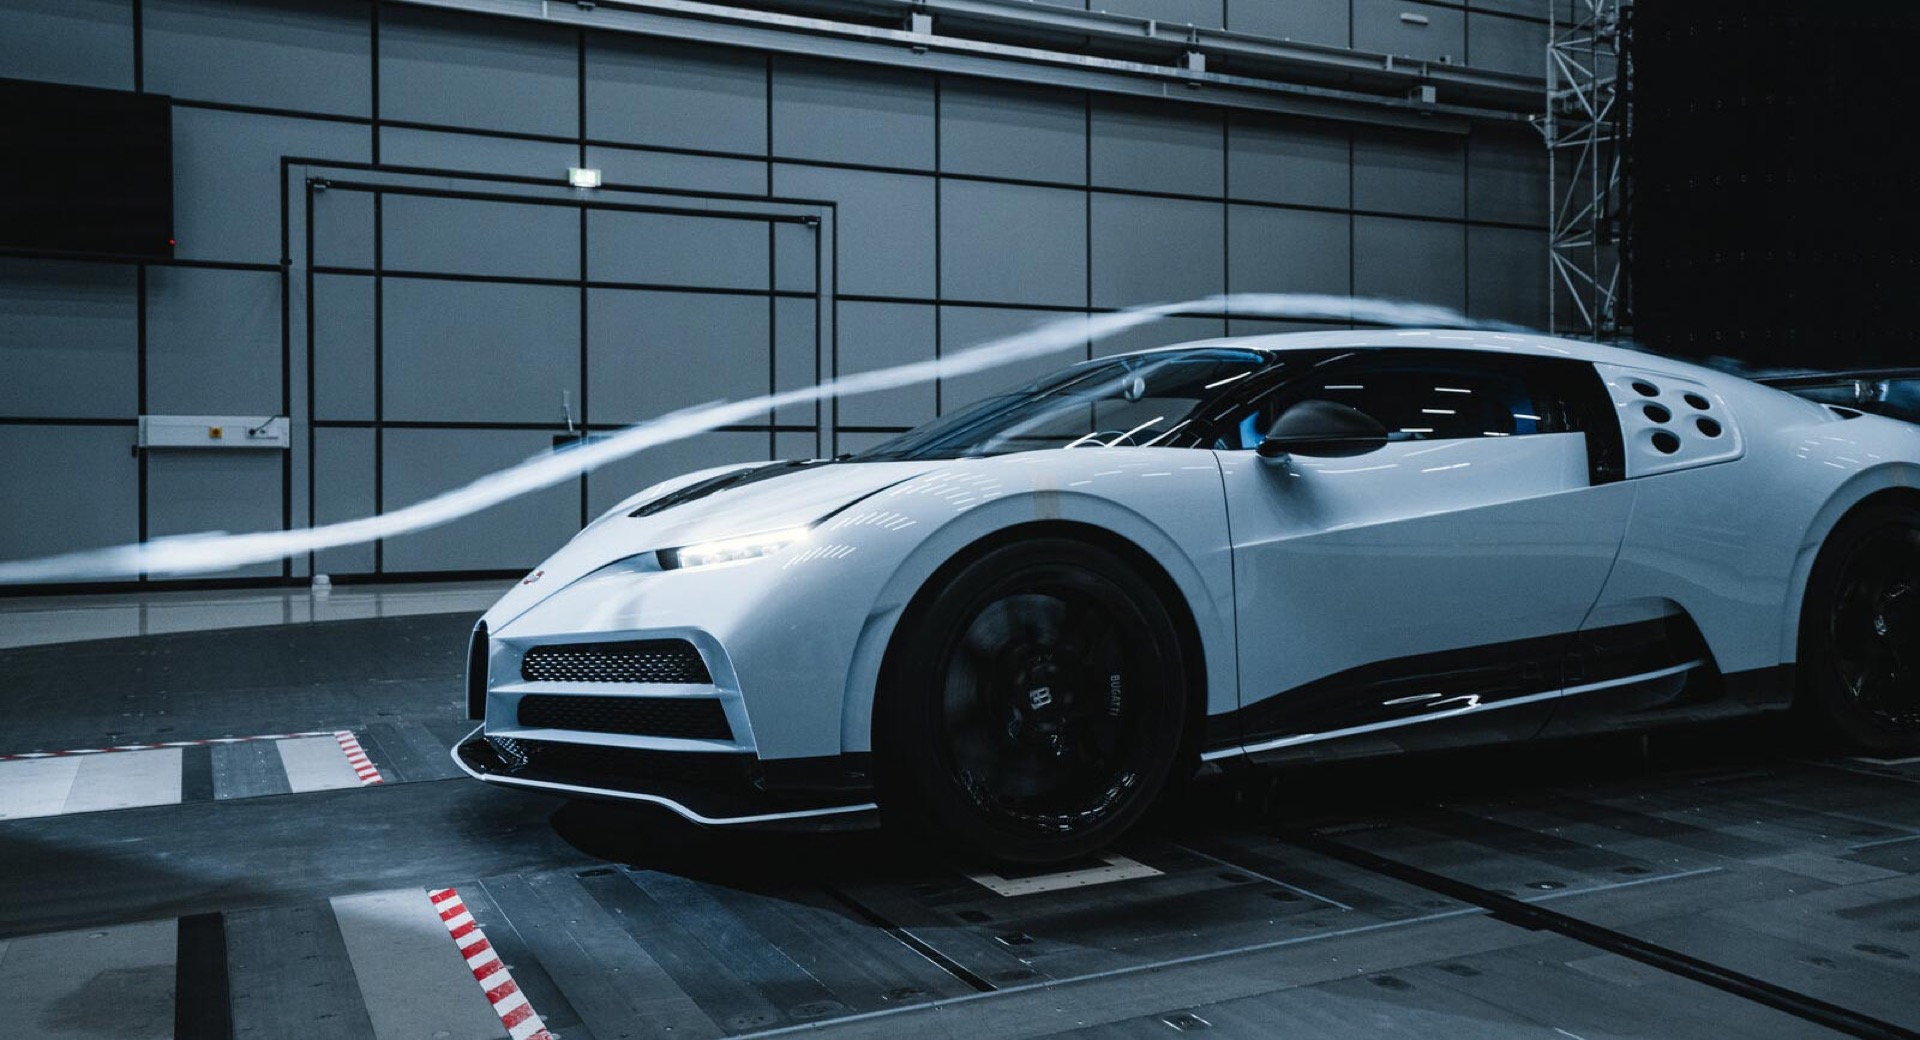 Siêu xe triệu đô Bugatti Centodieci hoàn thành thử nghiệm đường hầm gió 2022-bugatti-centodieci-wind-tunnel-11.jpg